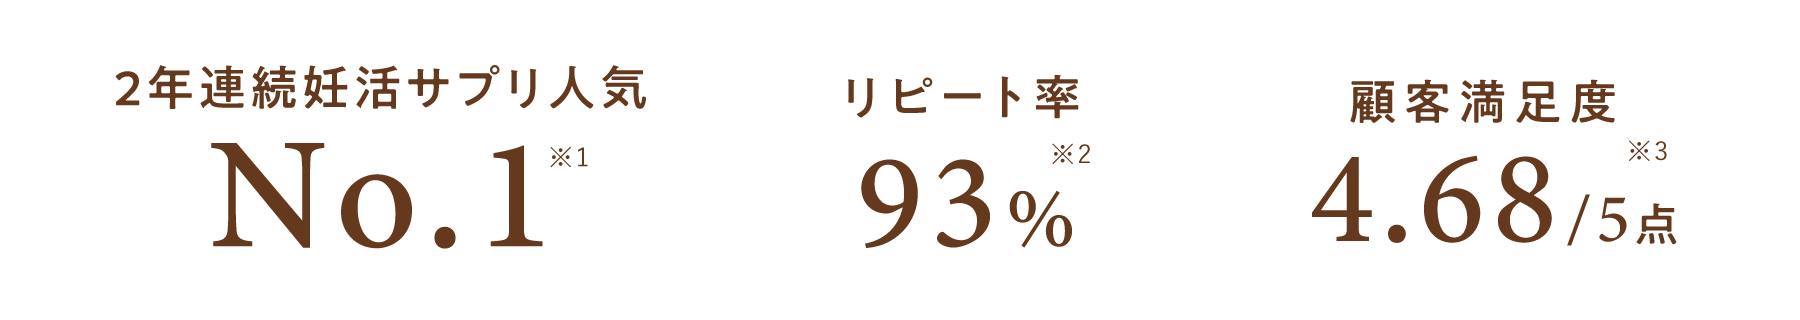 2年連続妊活サプリ人気 No.1 リピート率93% 顧客満足度4.68/5点